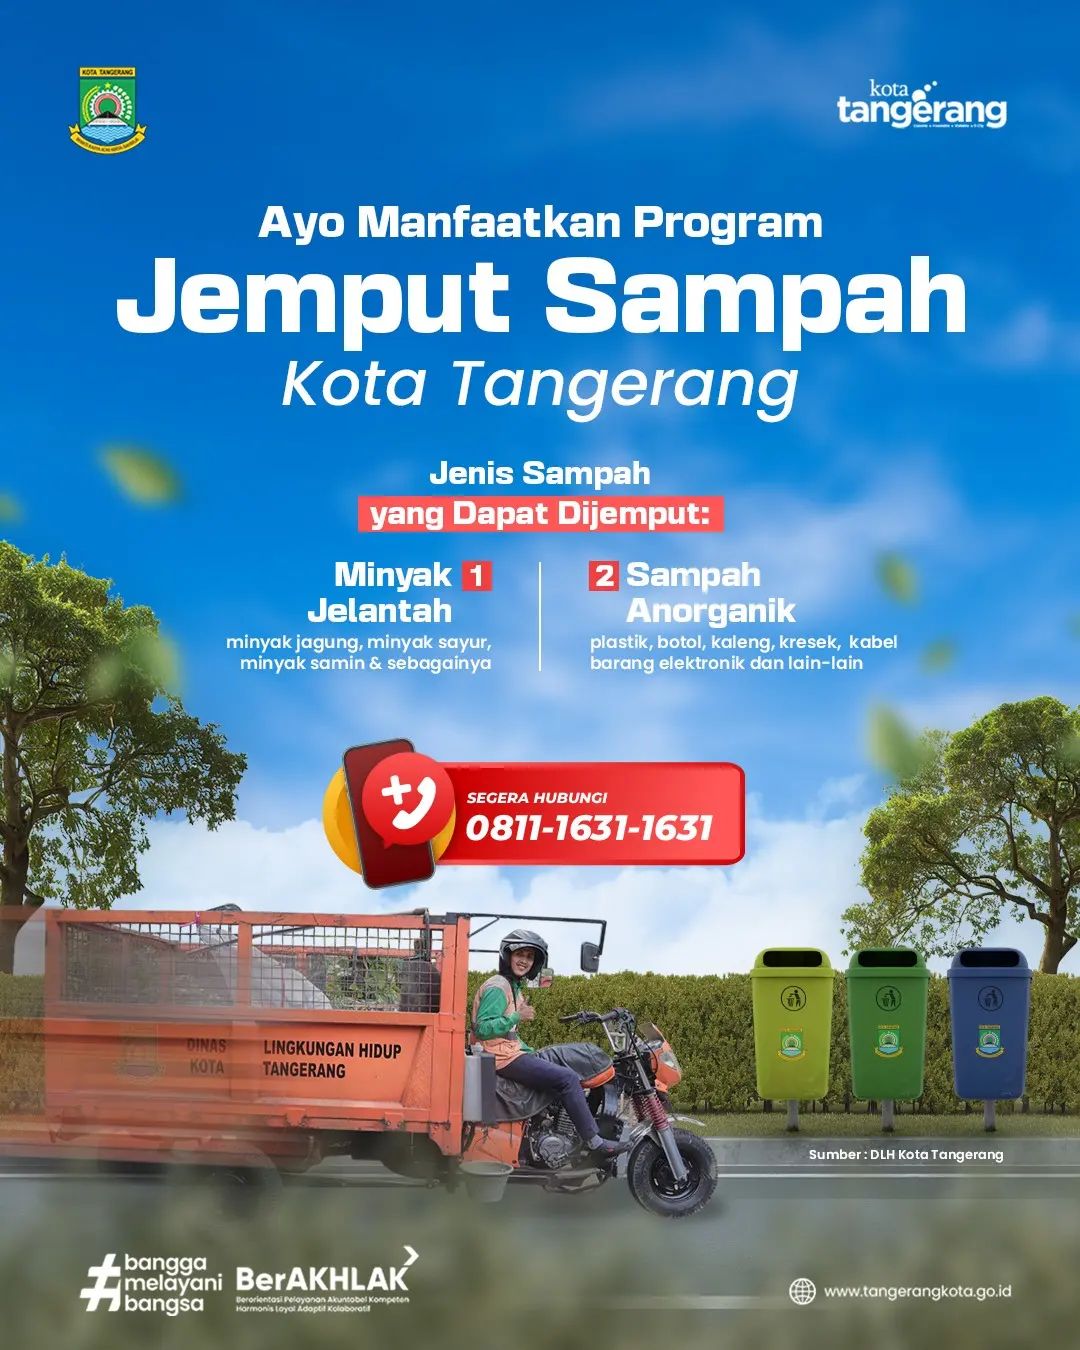 IMG-ayo-manfaatkan-program-jemput-sampah-kota-tangerang